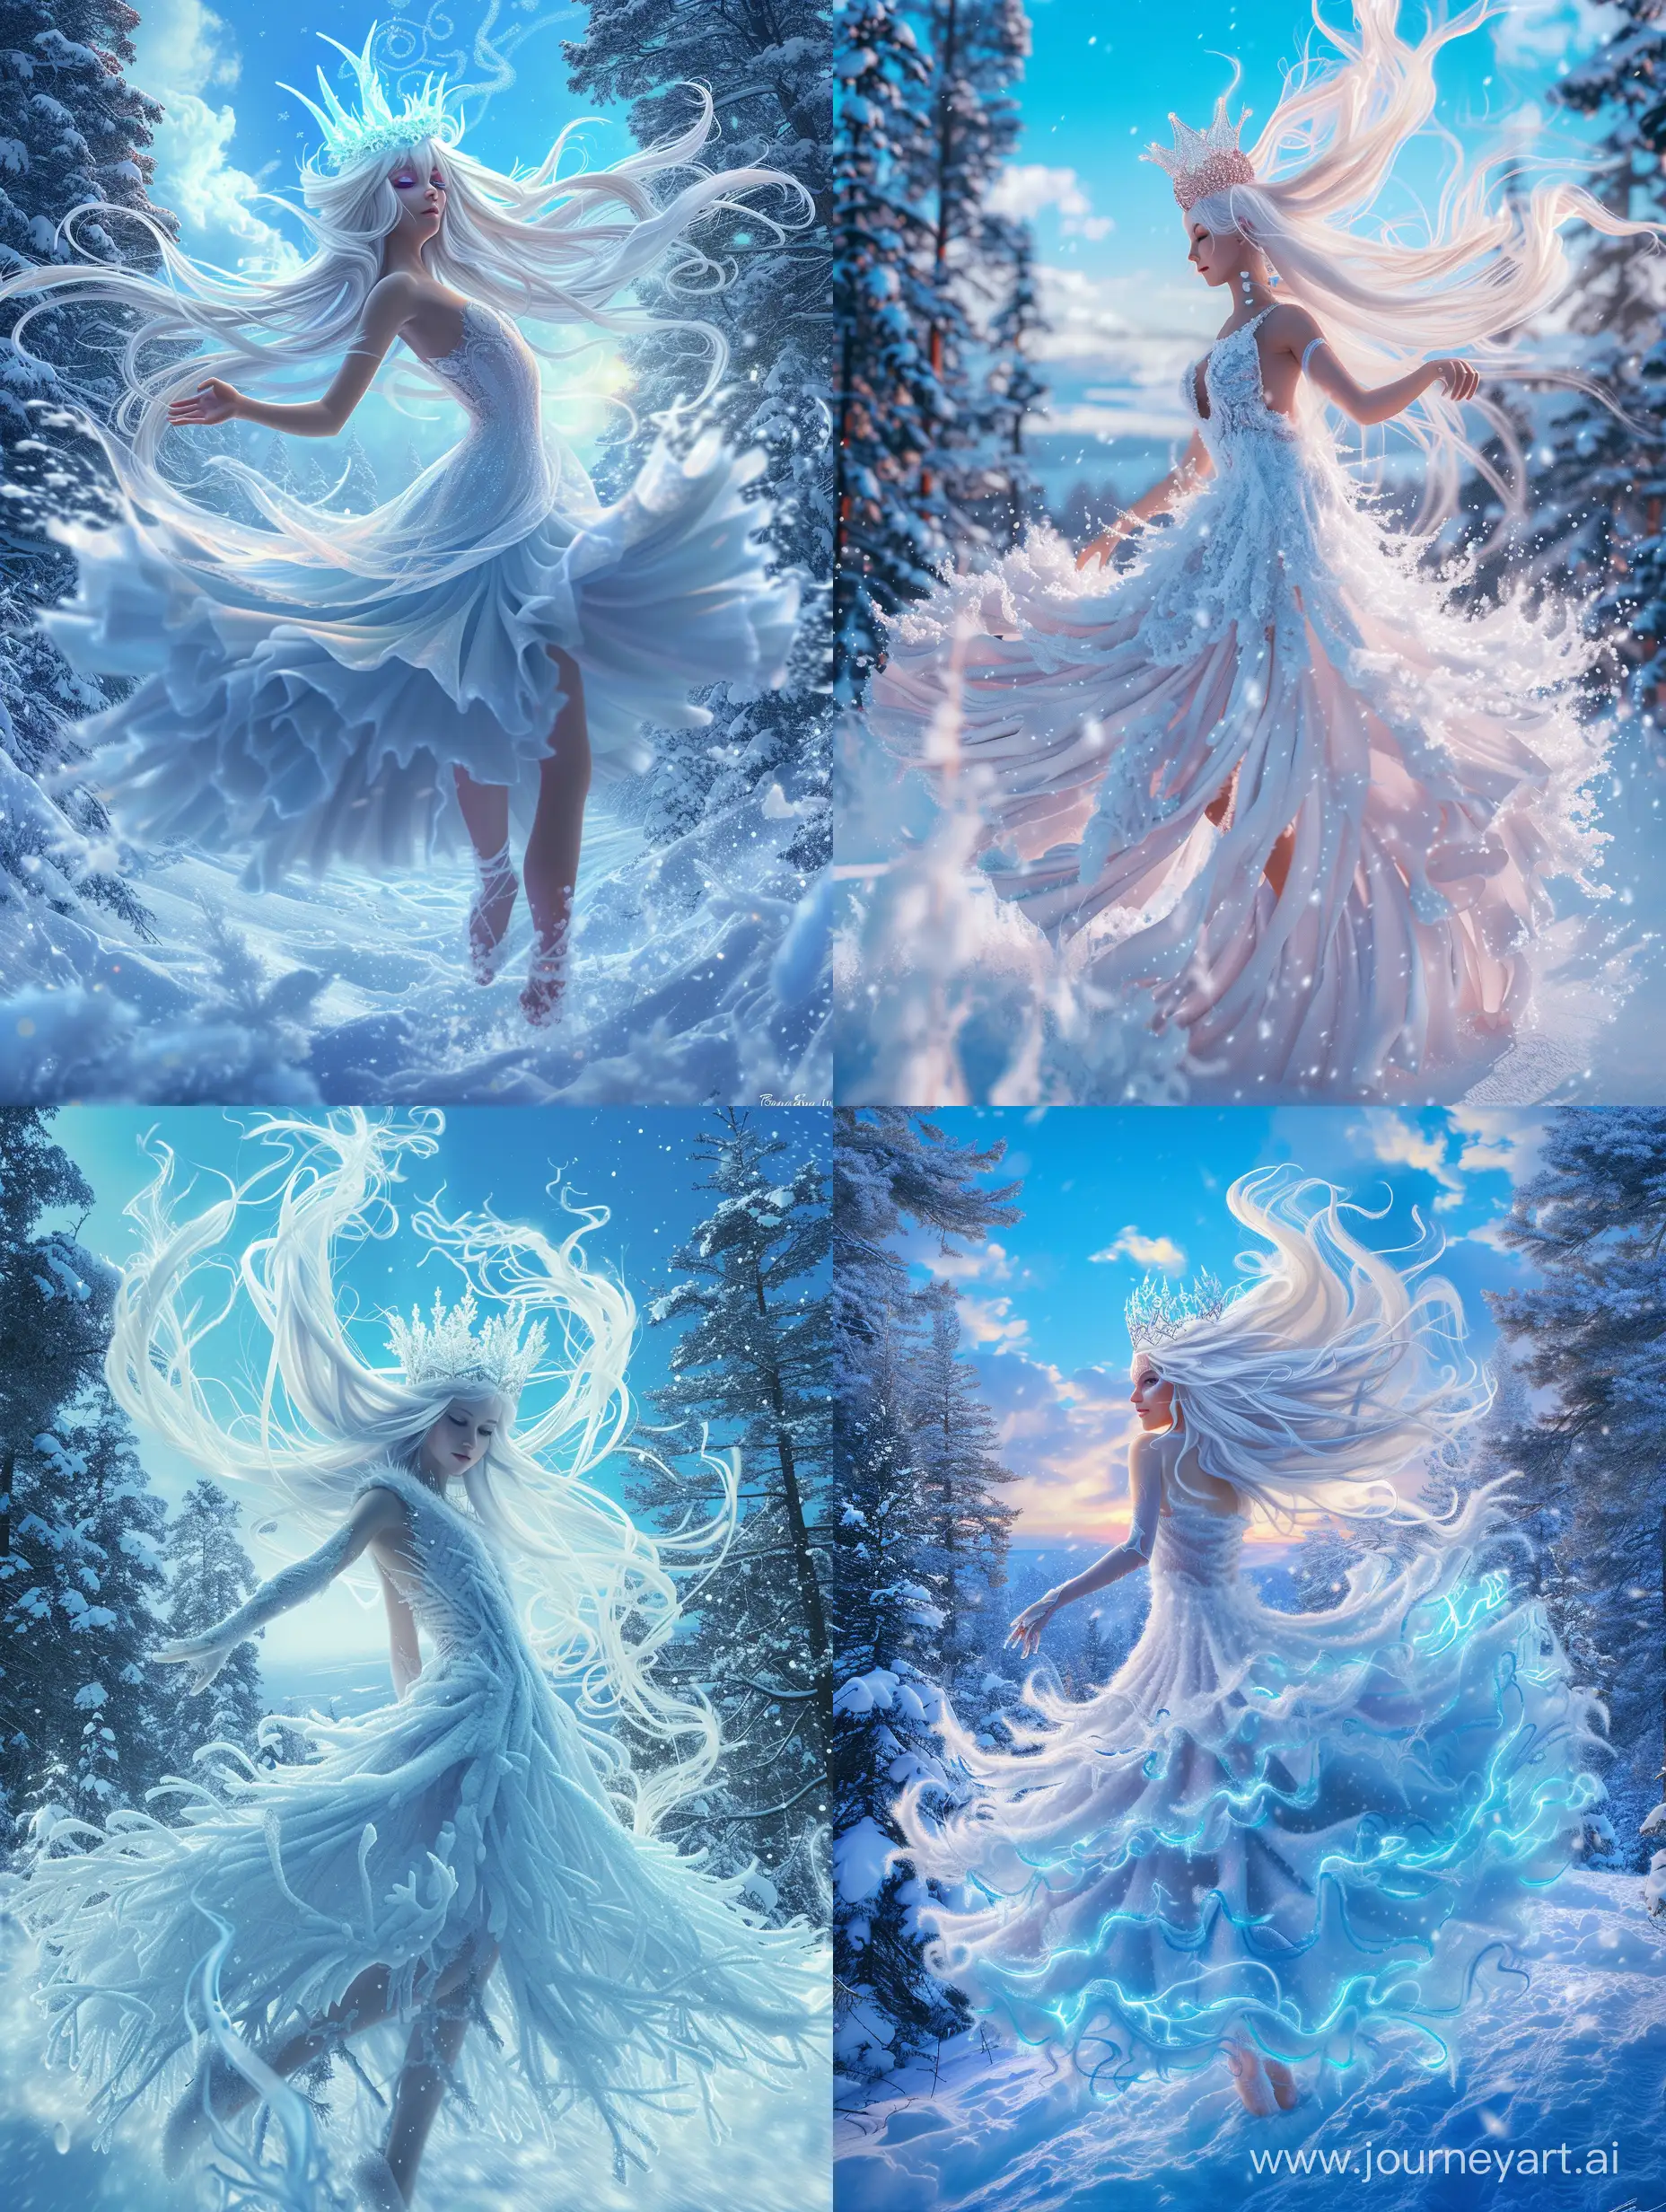 Enchanting-Winter-Queen-Dancing-in-Snowy-Forest